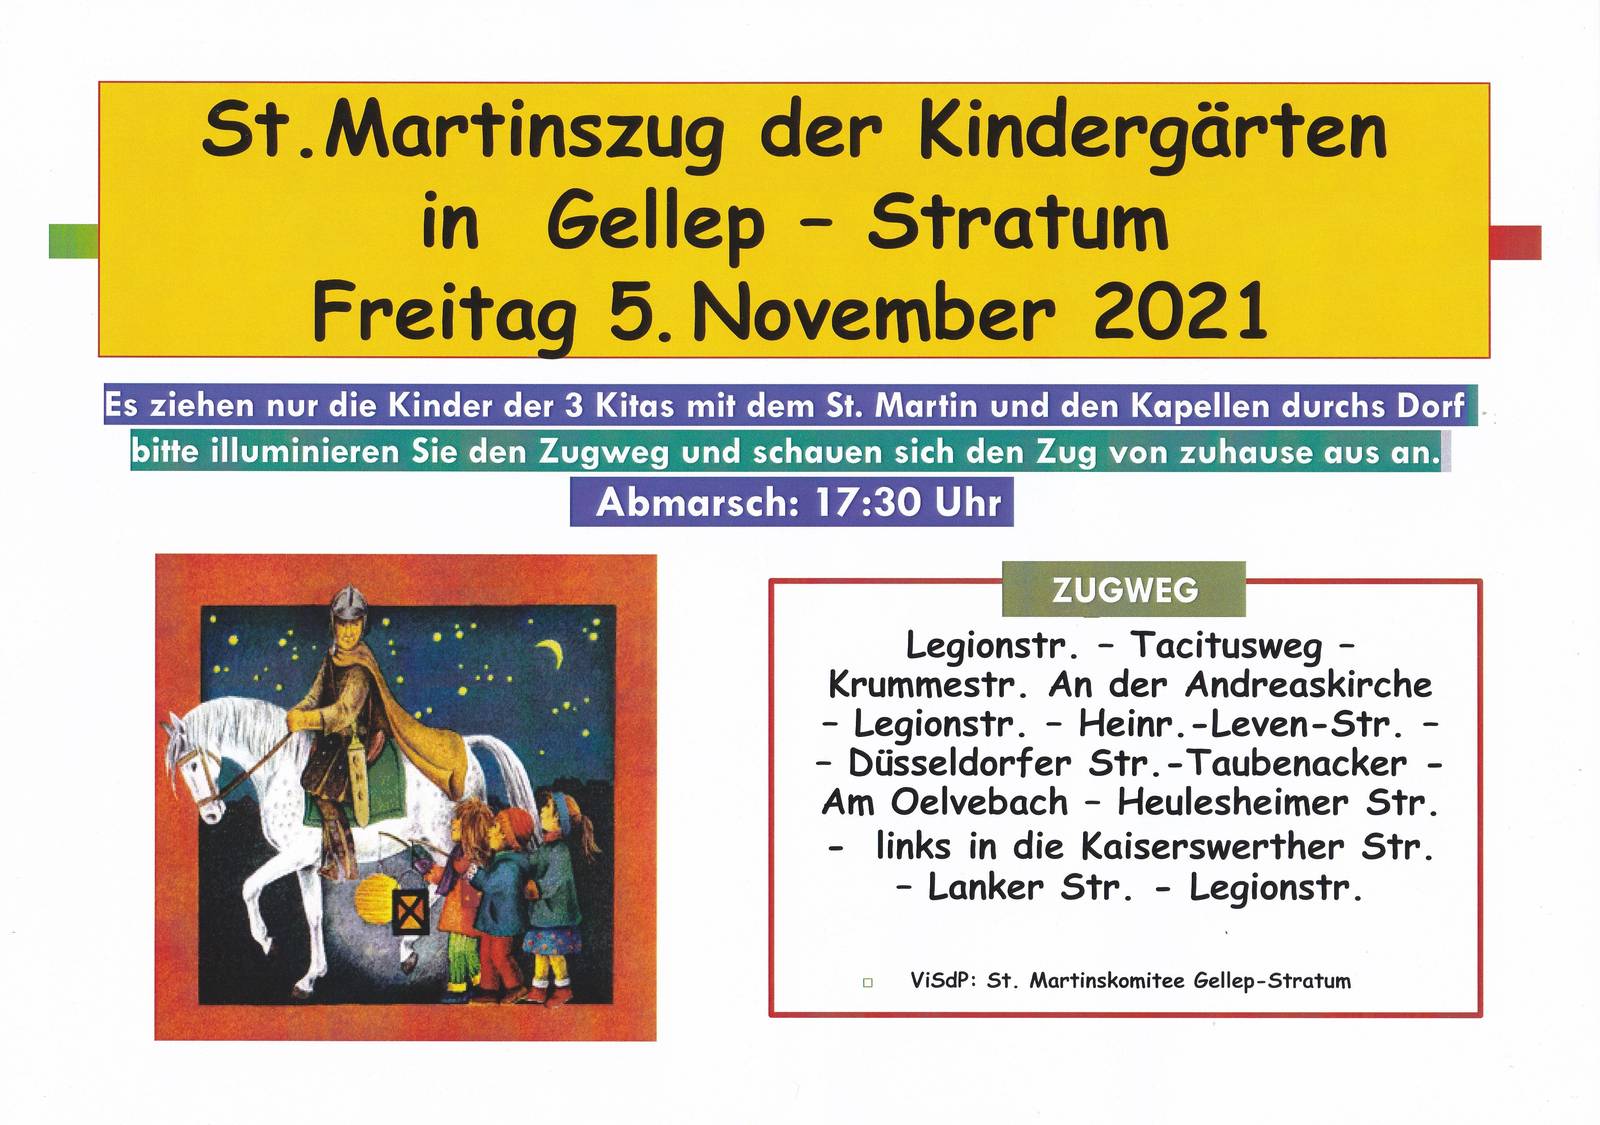 St. Martinszug der Kindergärten in Gellep-Stratum am 5. November 2021